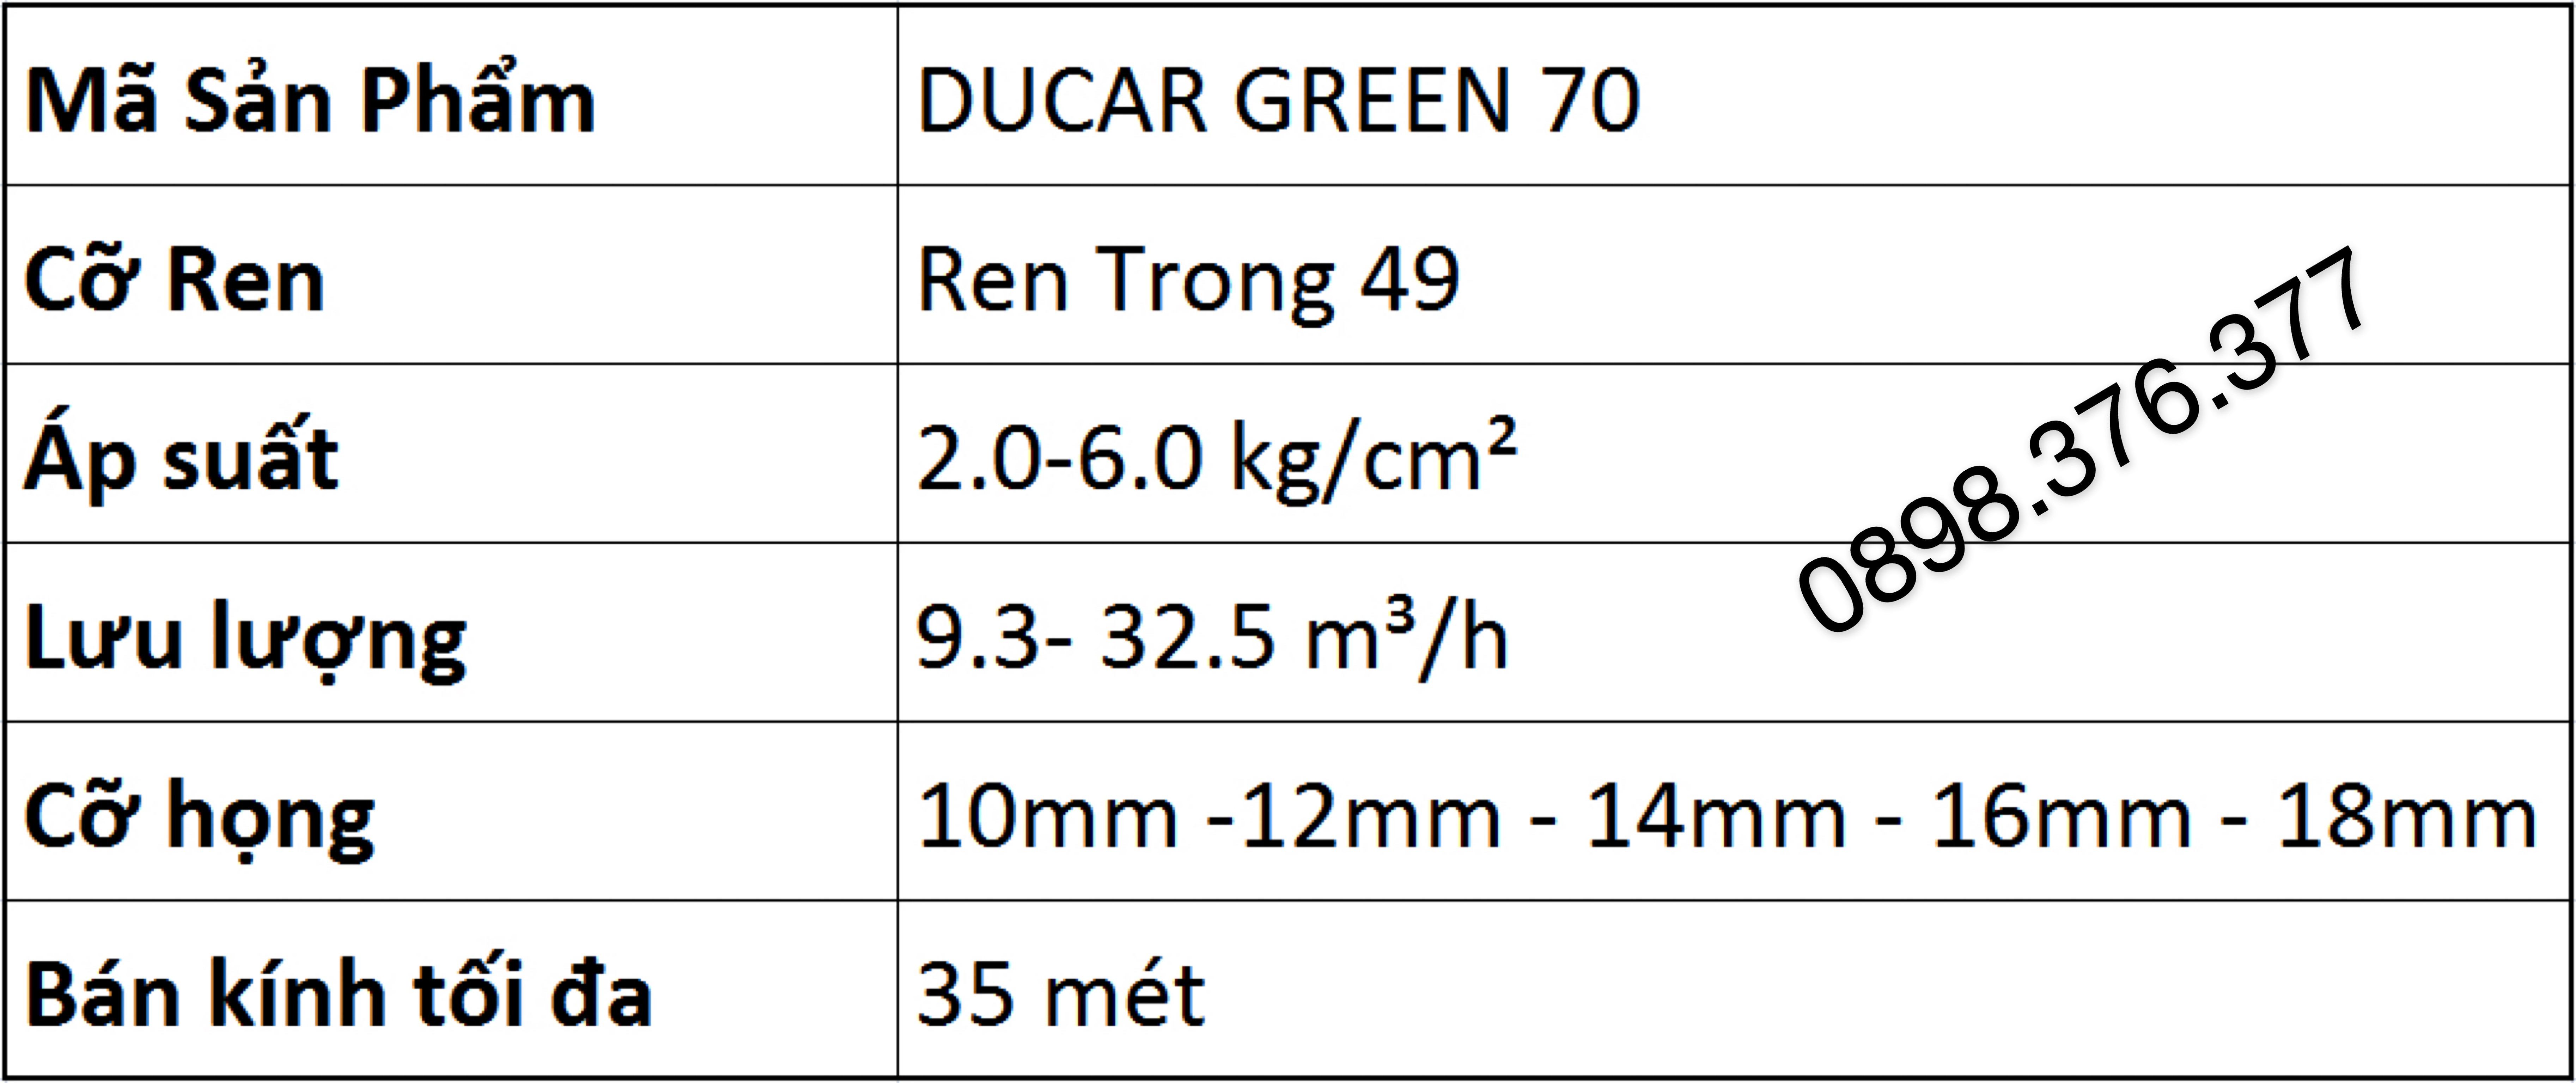 bảng thông số kỹ thuật béc ducar green 70 thỗ nhĩ kỳ